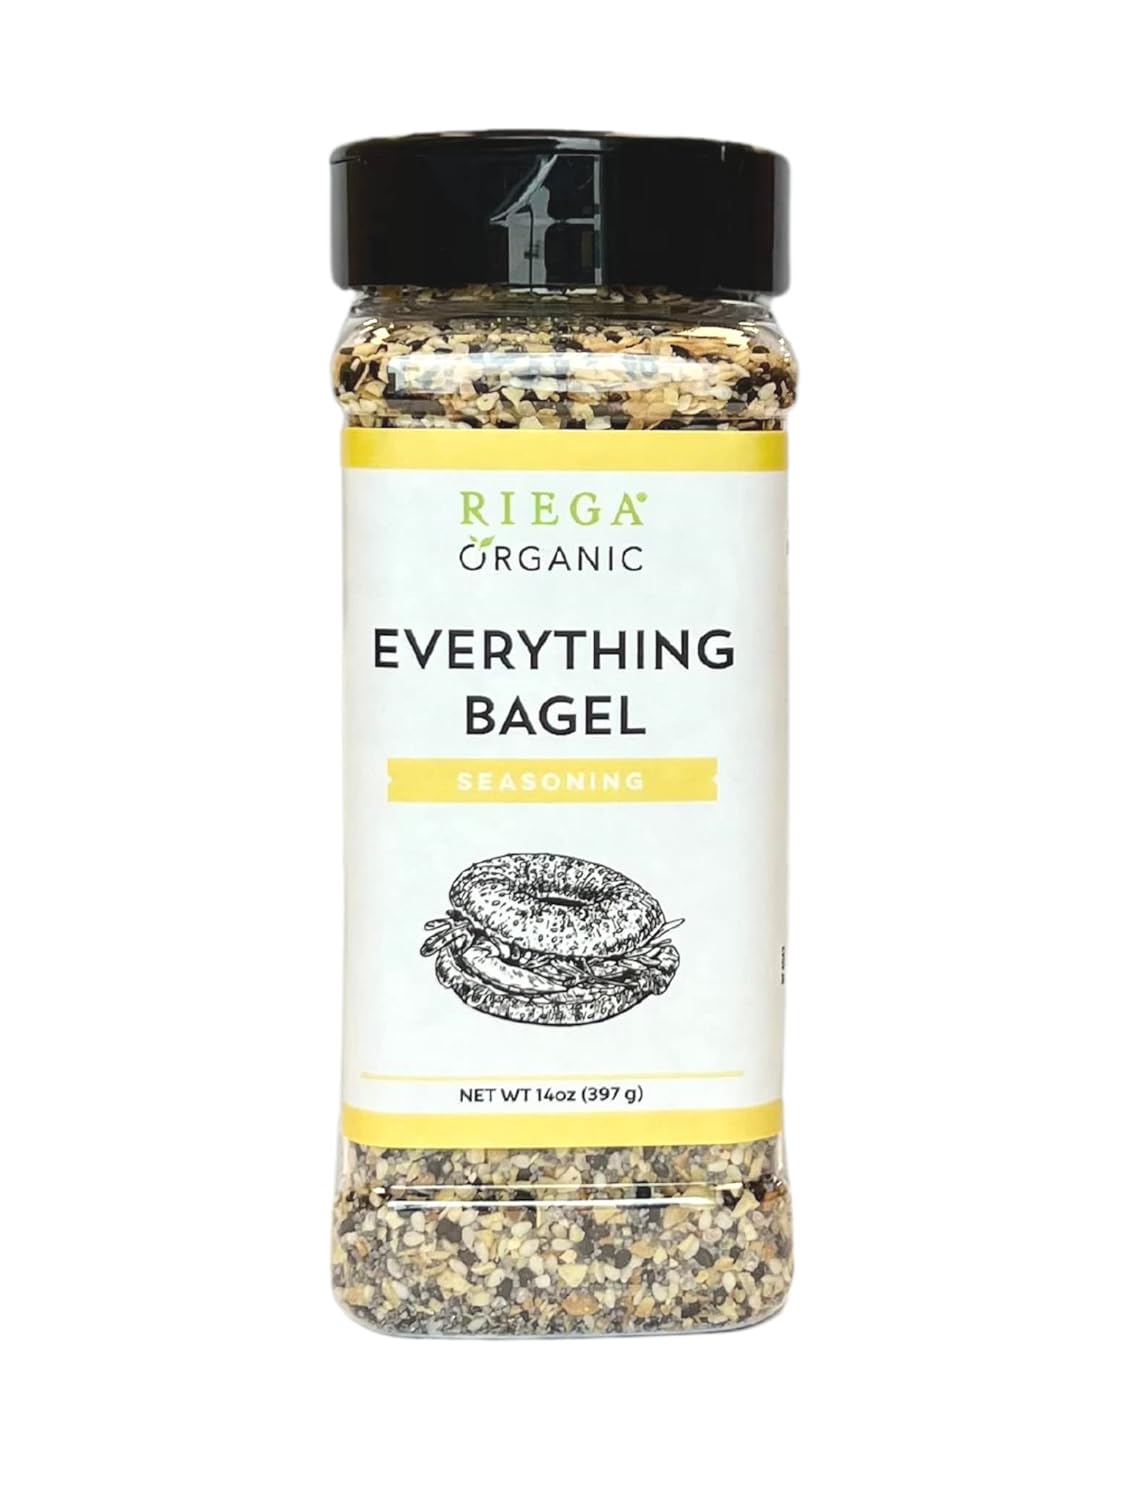 Riega Organic Everything Bagel Seasoning, Everything Bagel Spice Blend